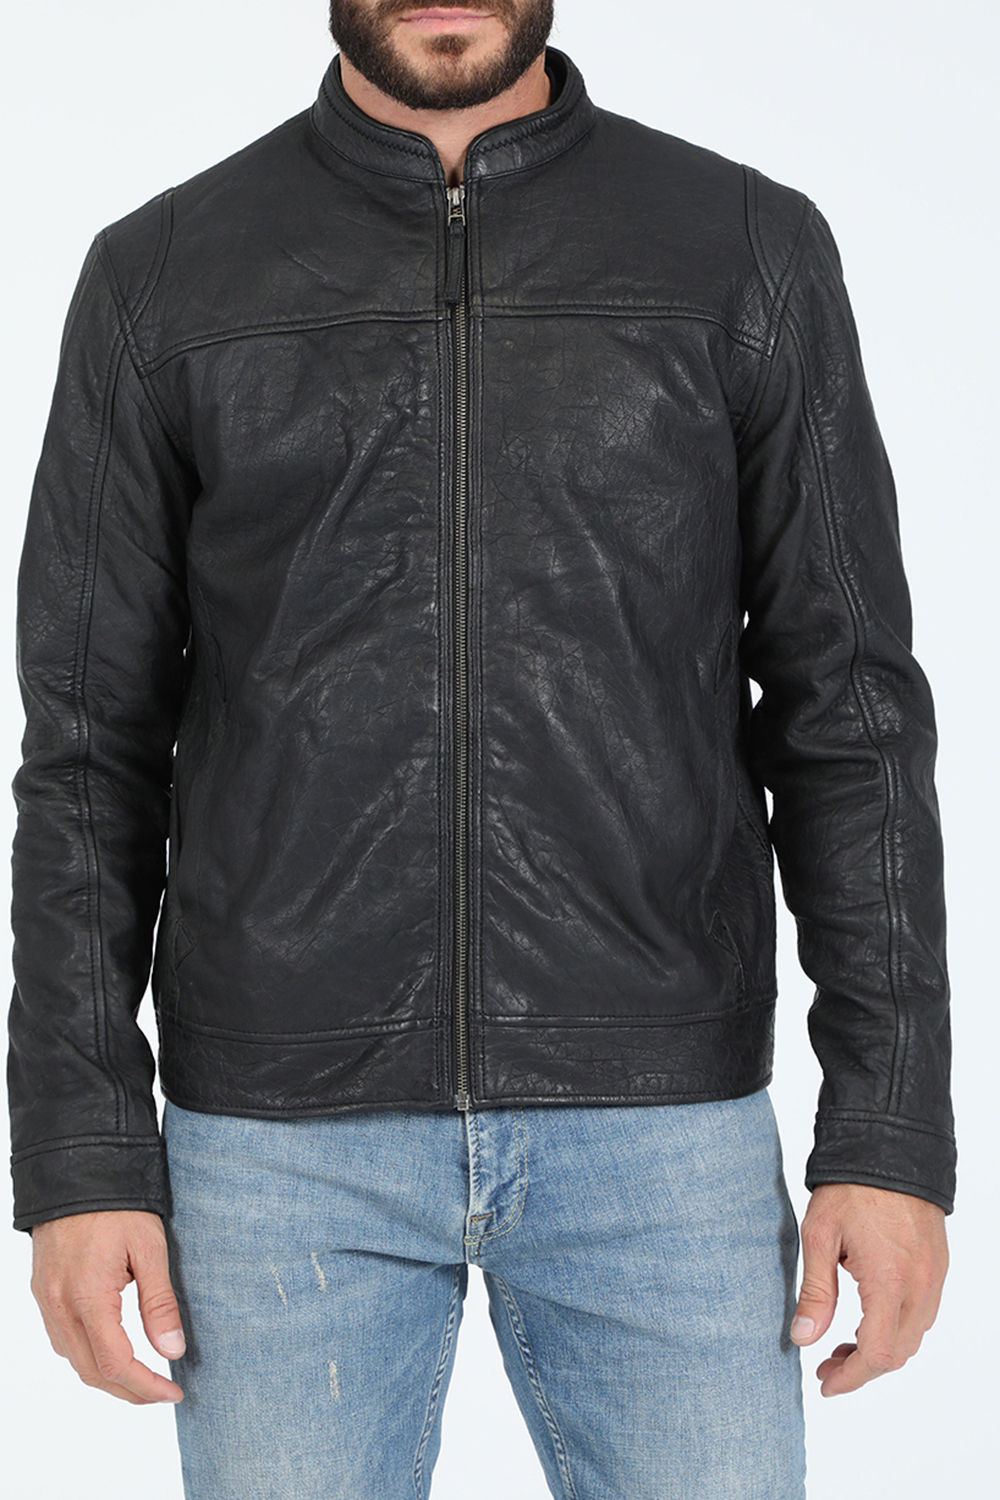 Ανδρικά/Ρούχα/Πανωφόρια/Τζάκετς GABBA - Ανδρικό δερμάτινο jacket GABBA Benton Black Leather Jacket μαύρο